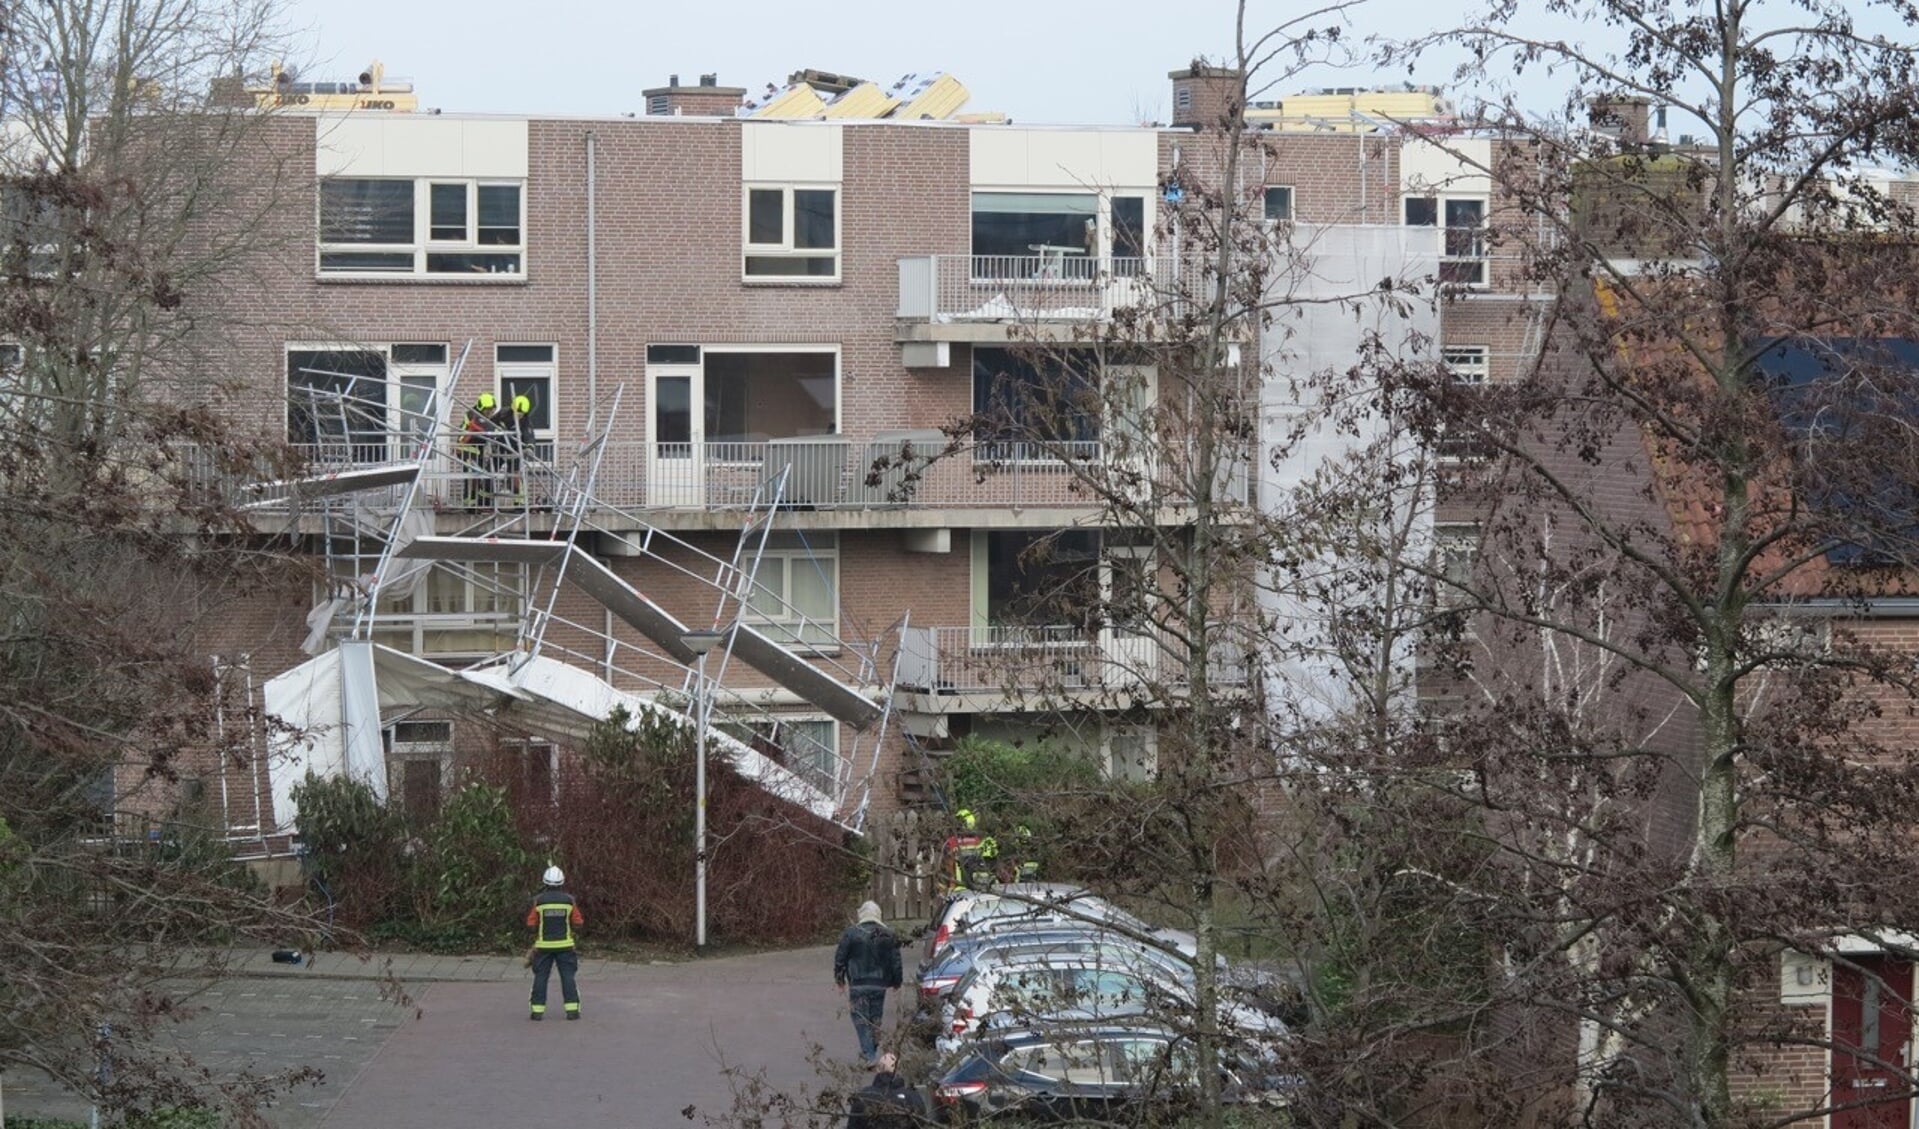 De Leiderdorpse brandweer werd vrijdag rond 4 uur gealarmeerd vanwege een omgevallen steiger aan het Jan de Hartogplein. 